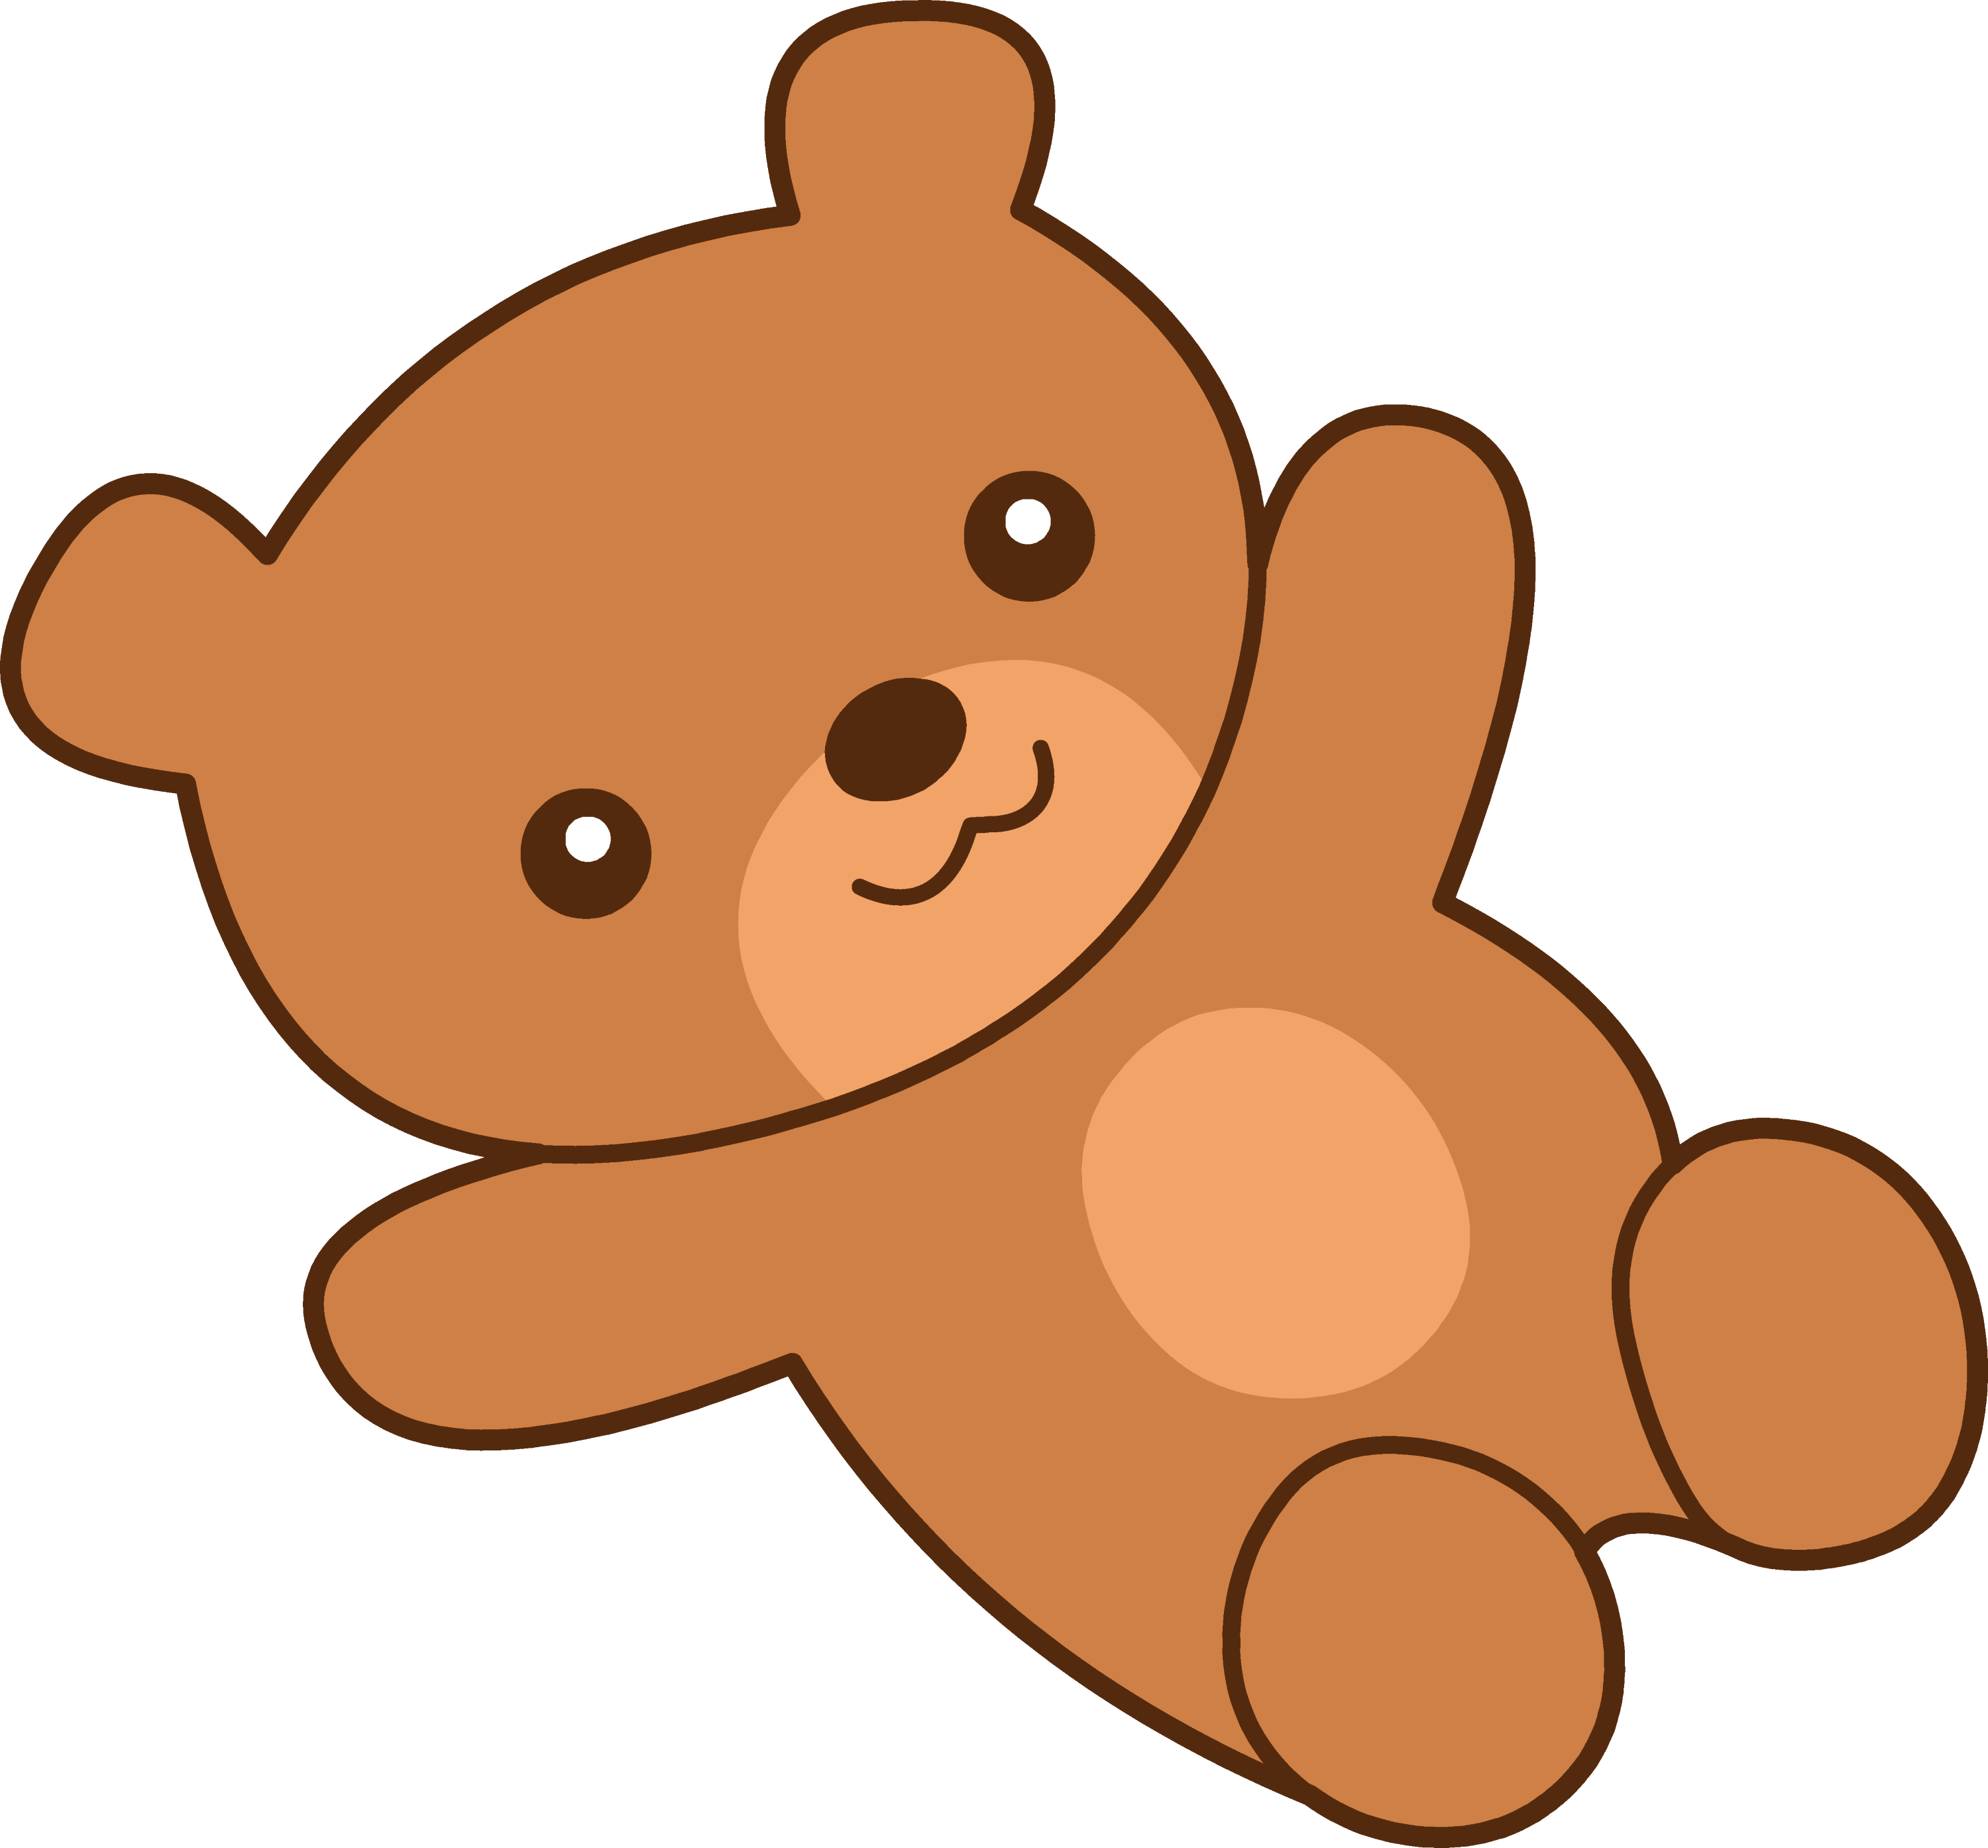 animated teddy bear clip art - photo #2